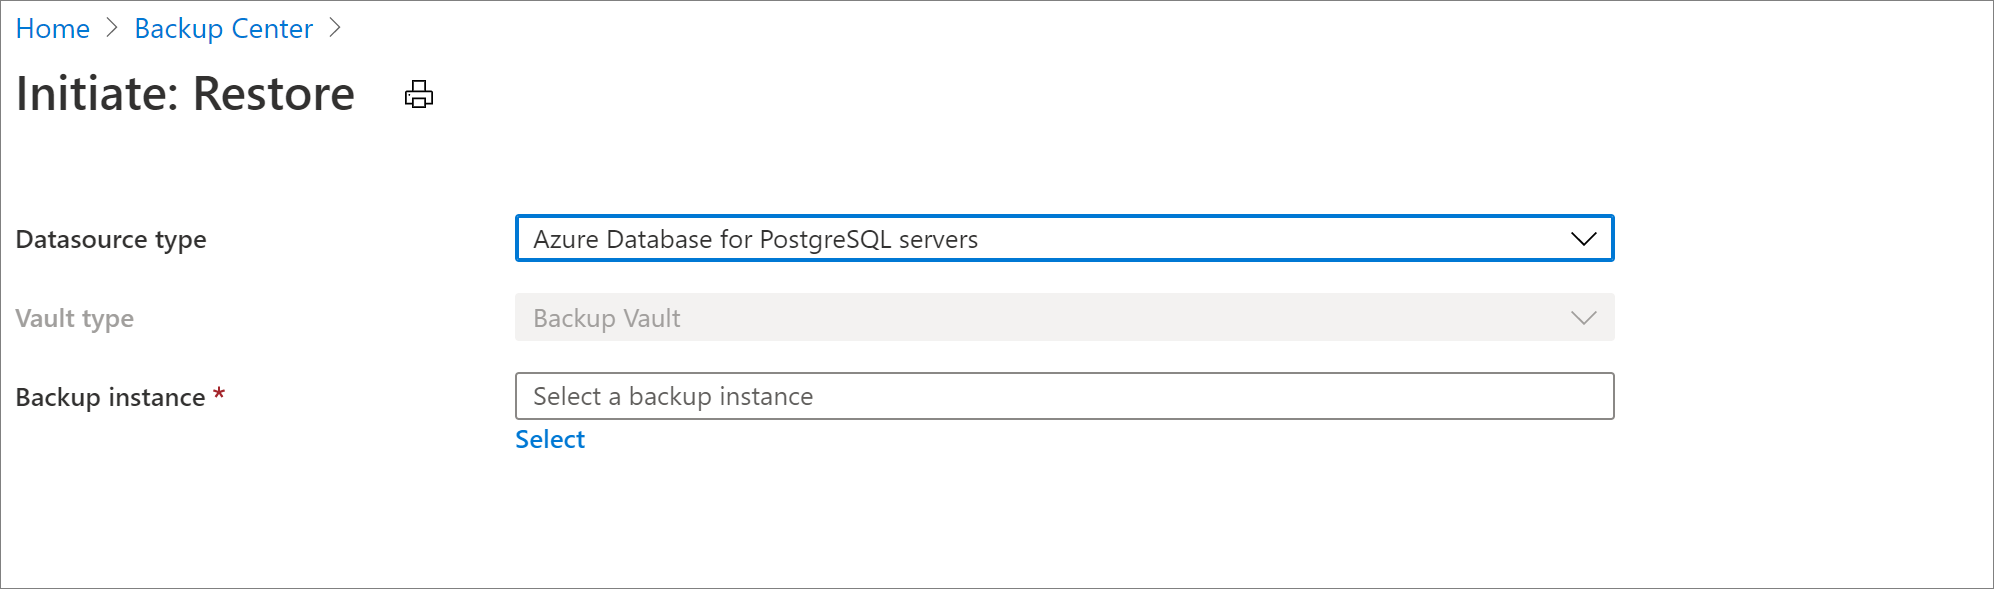 Sélectionner une source de données pour restaurer le serveur Azure Database pour PostgreSQL